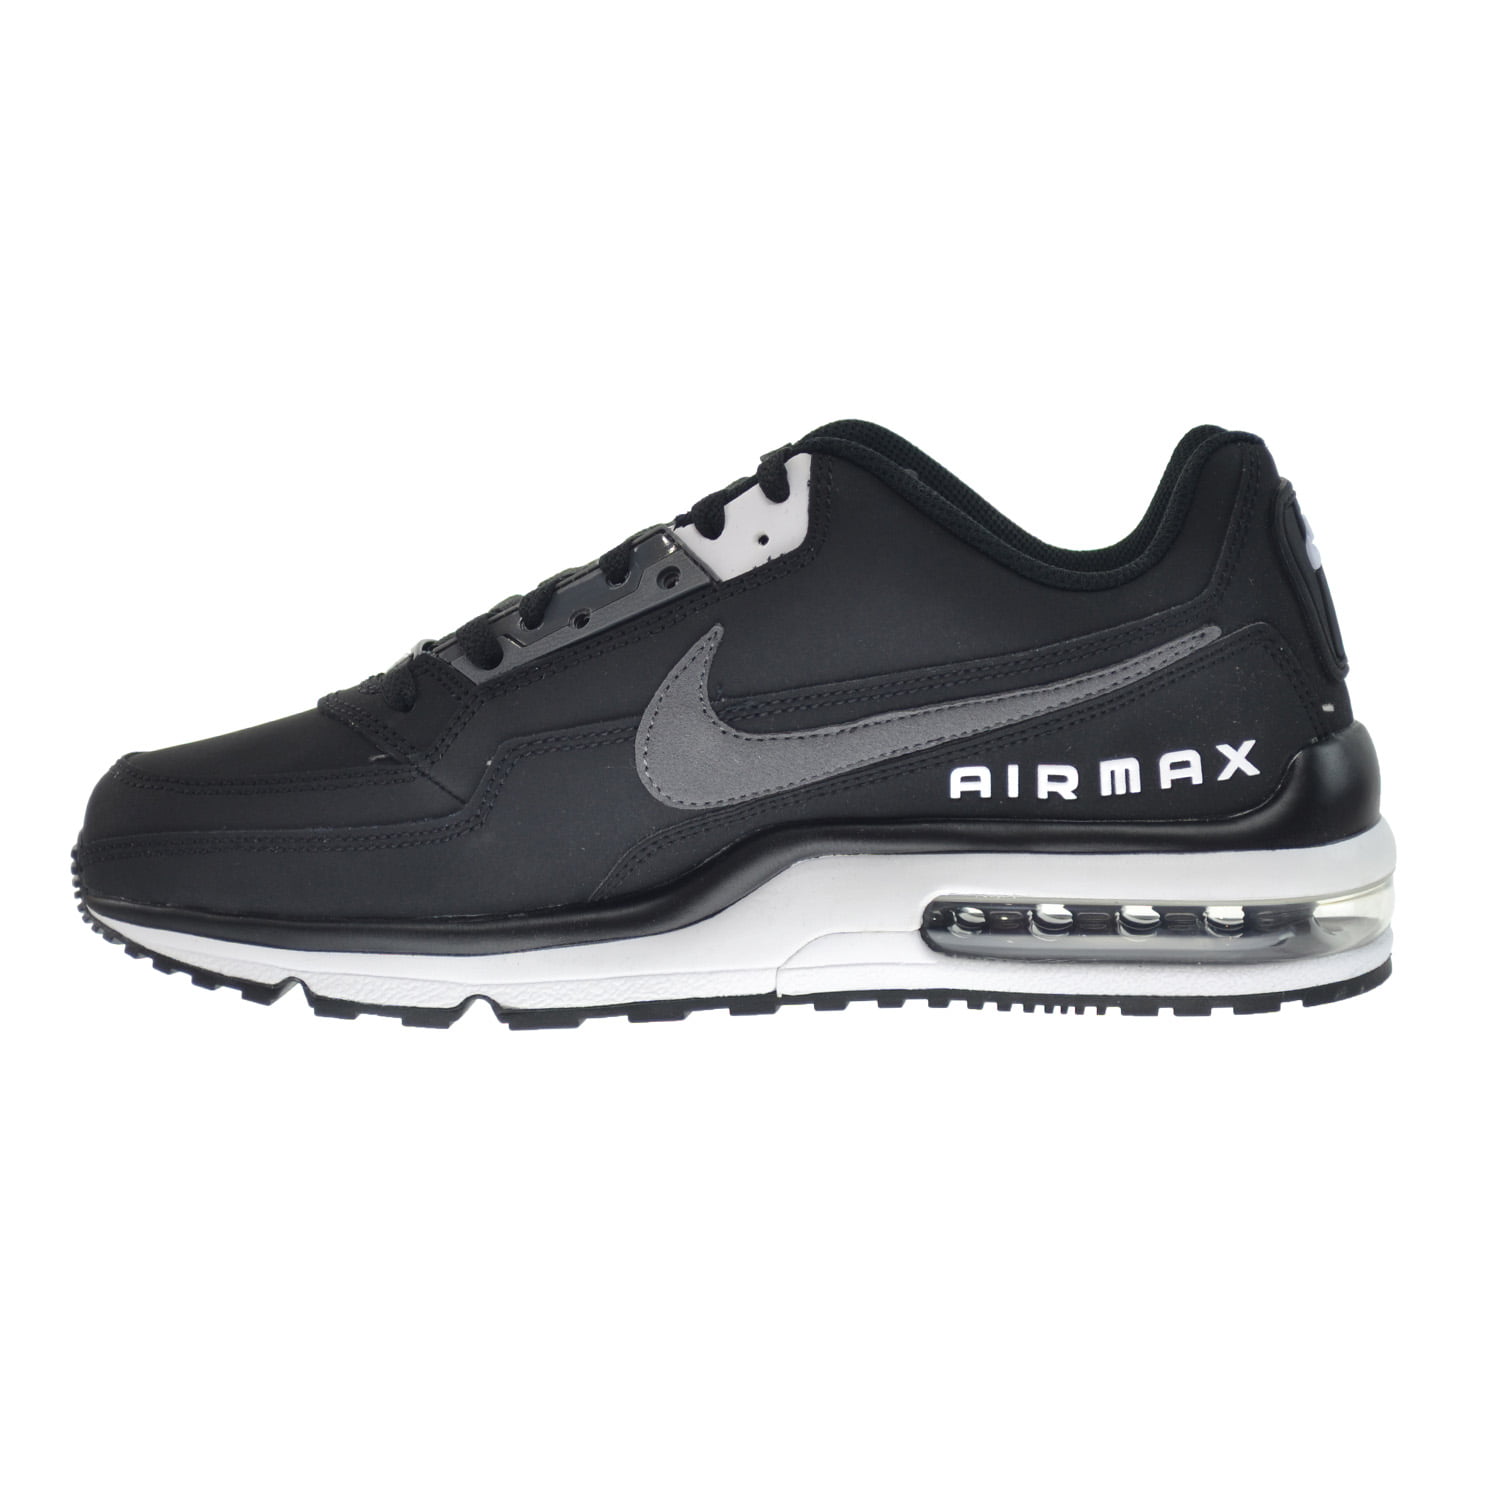 Nike - Nike 687977-011: Air Max LTD 3 Men's Black/Dark Grey/White Sneakers  (8 D(M) US Men) - Walmart.com - Walmart.com